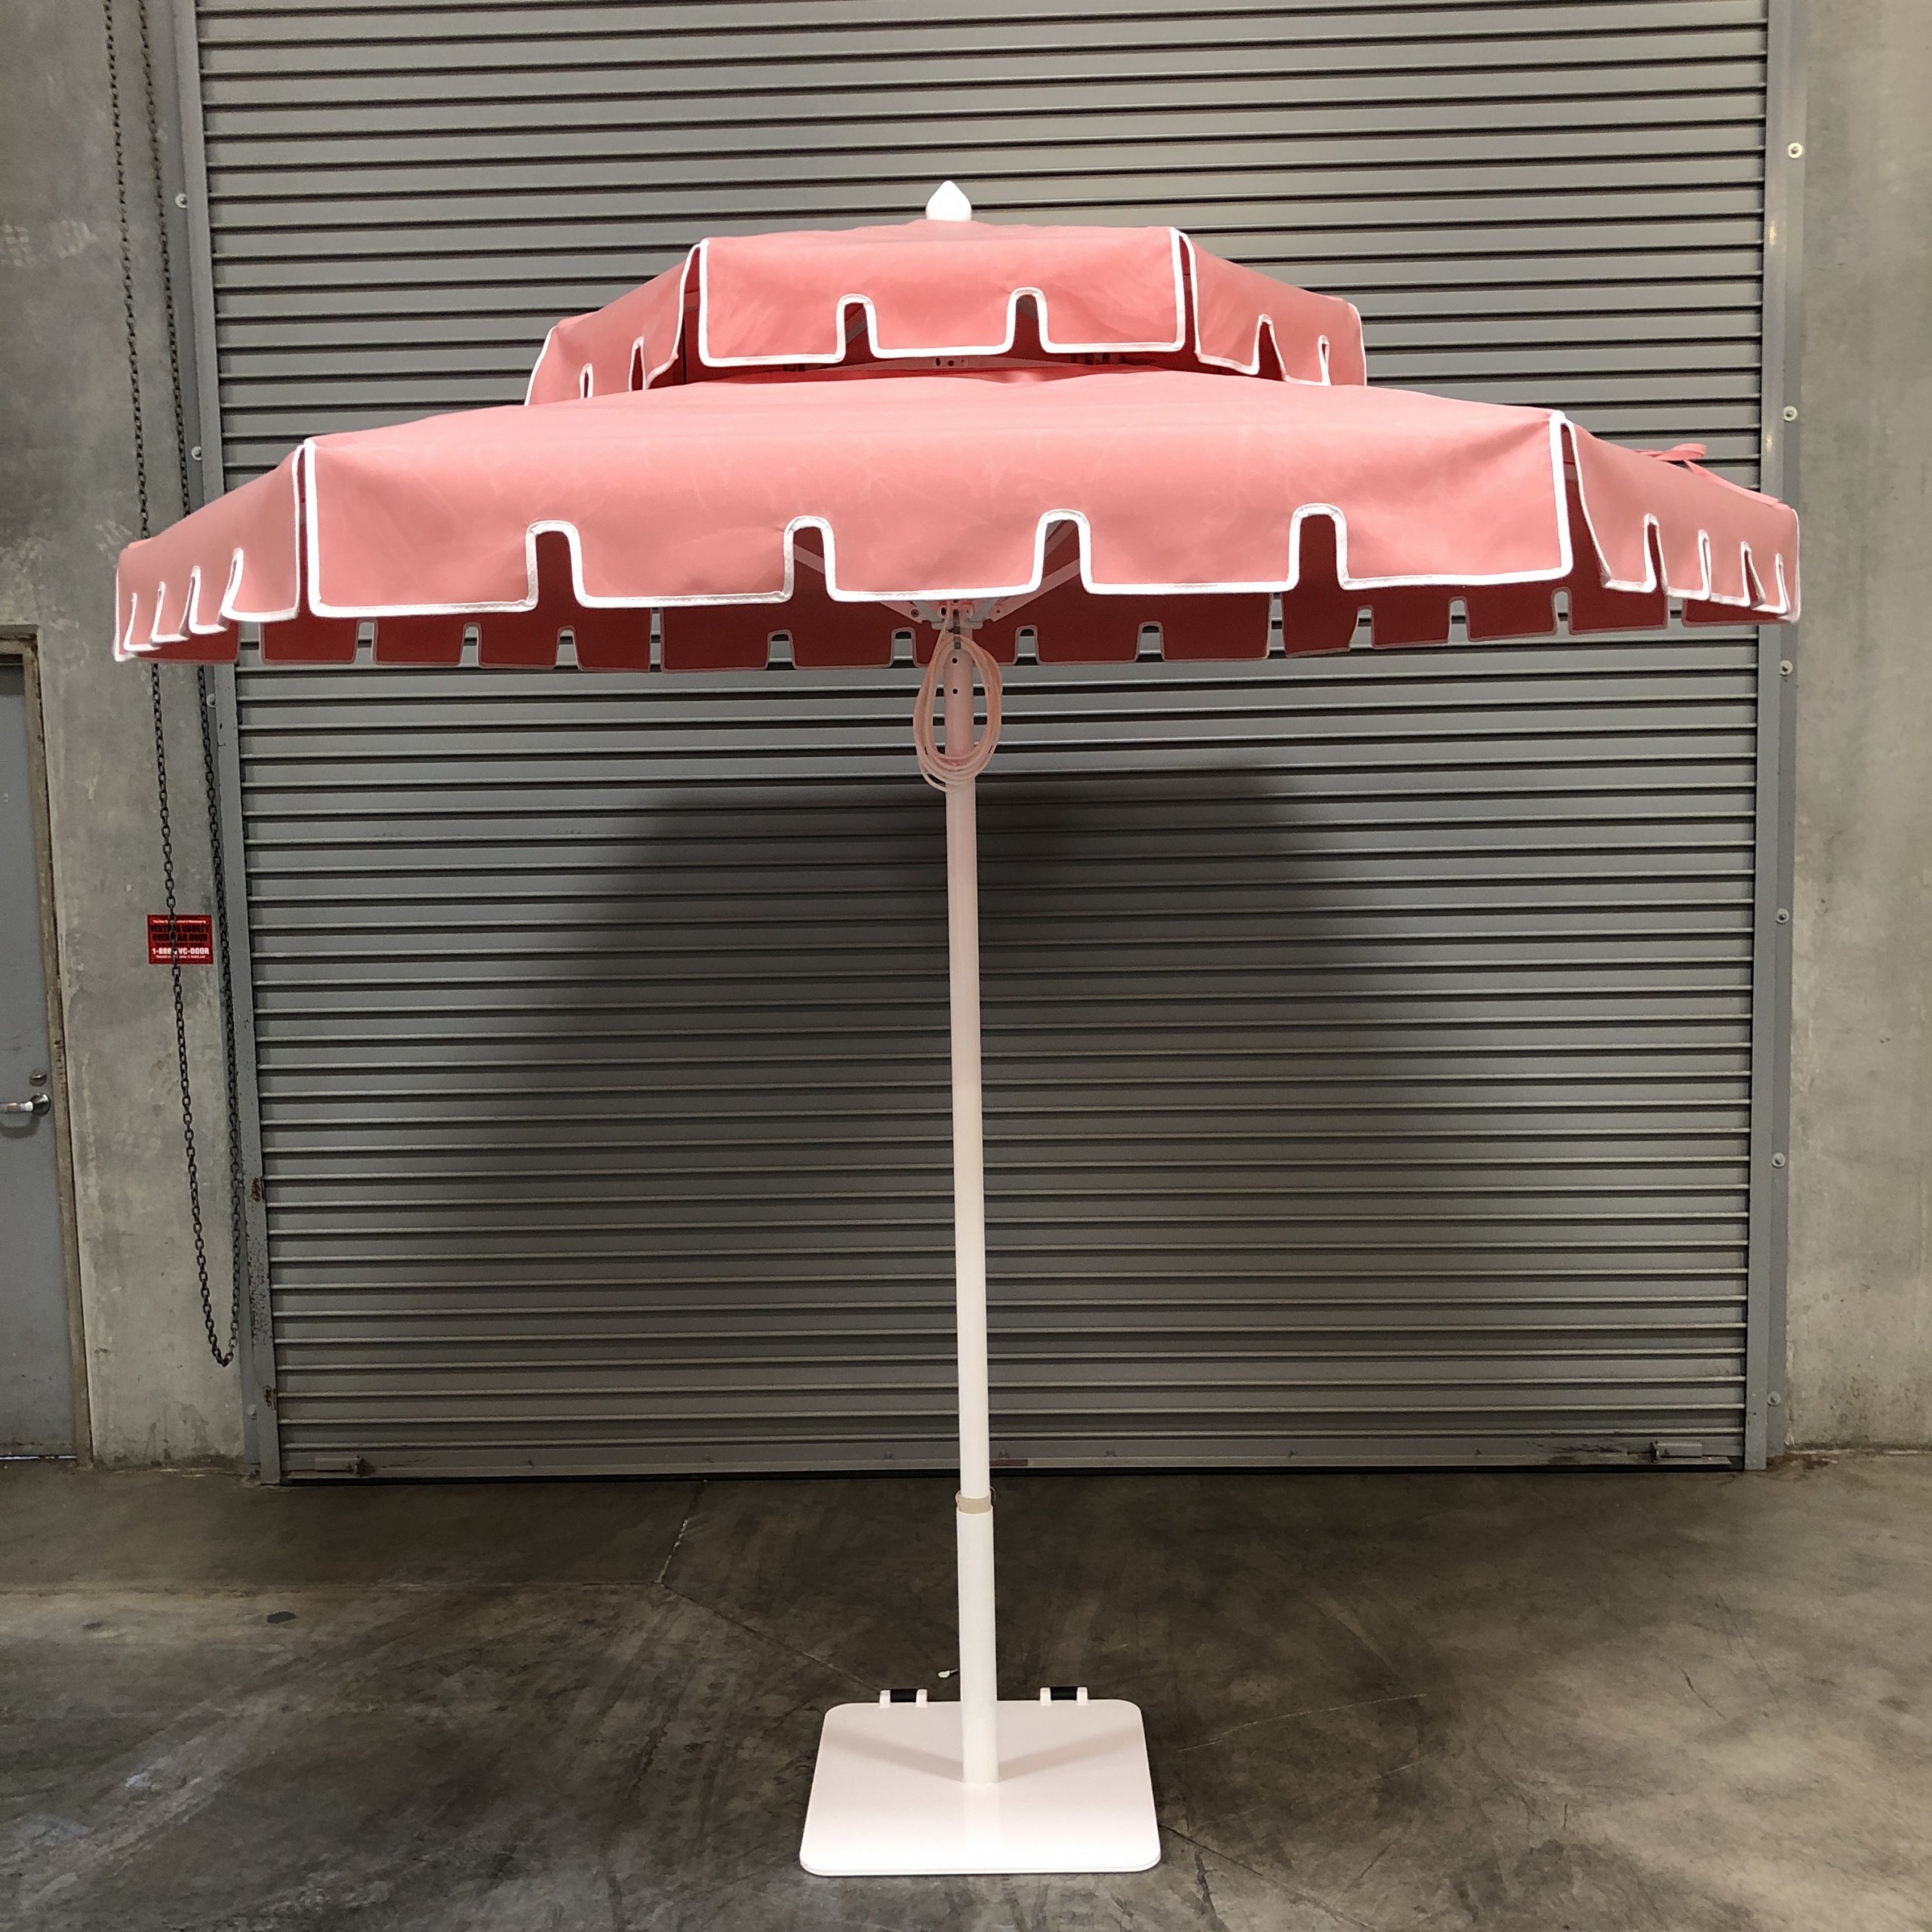 Image of pink umbrella in front of warehouse door